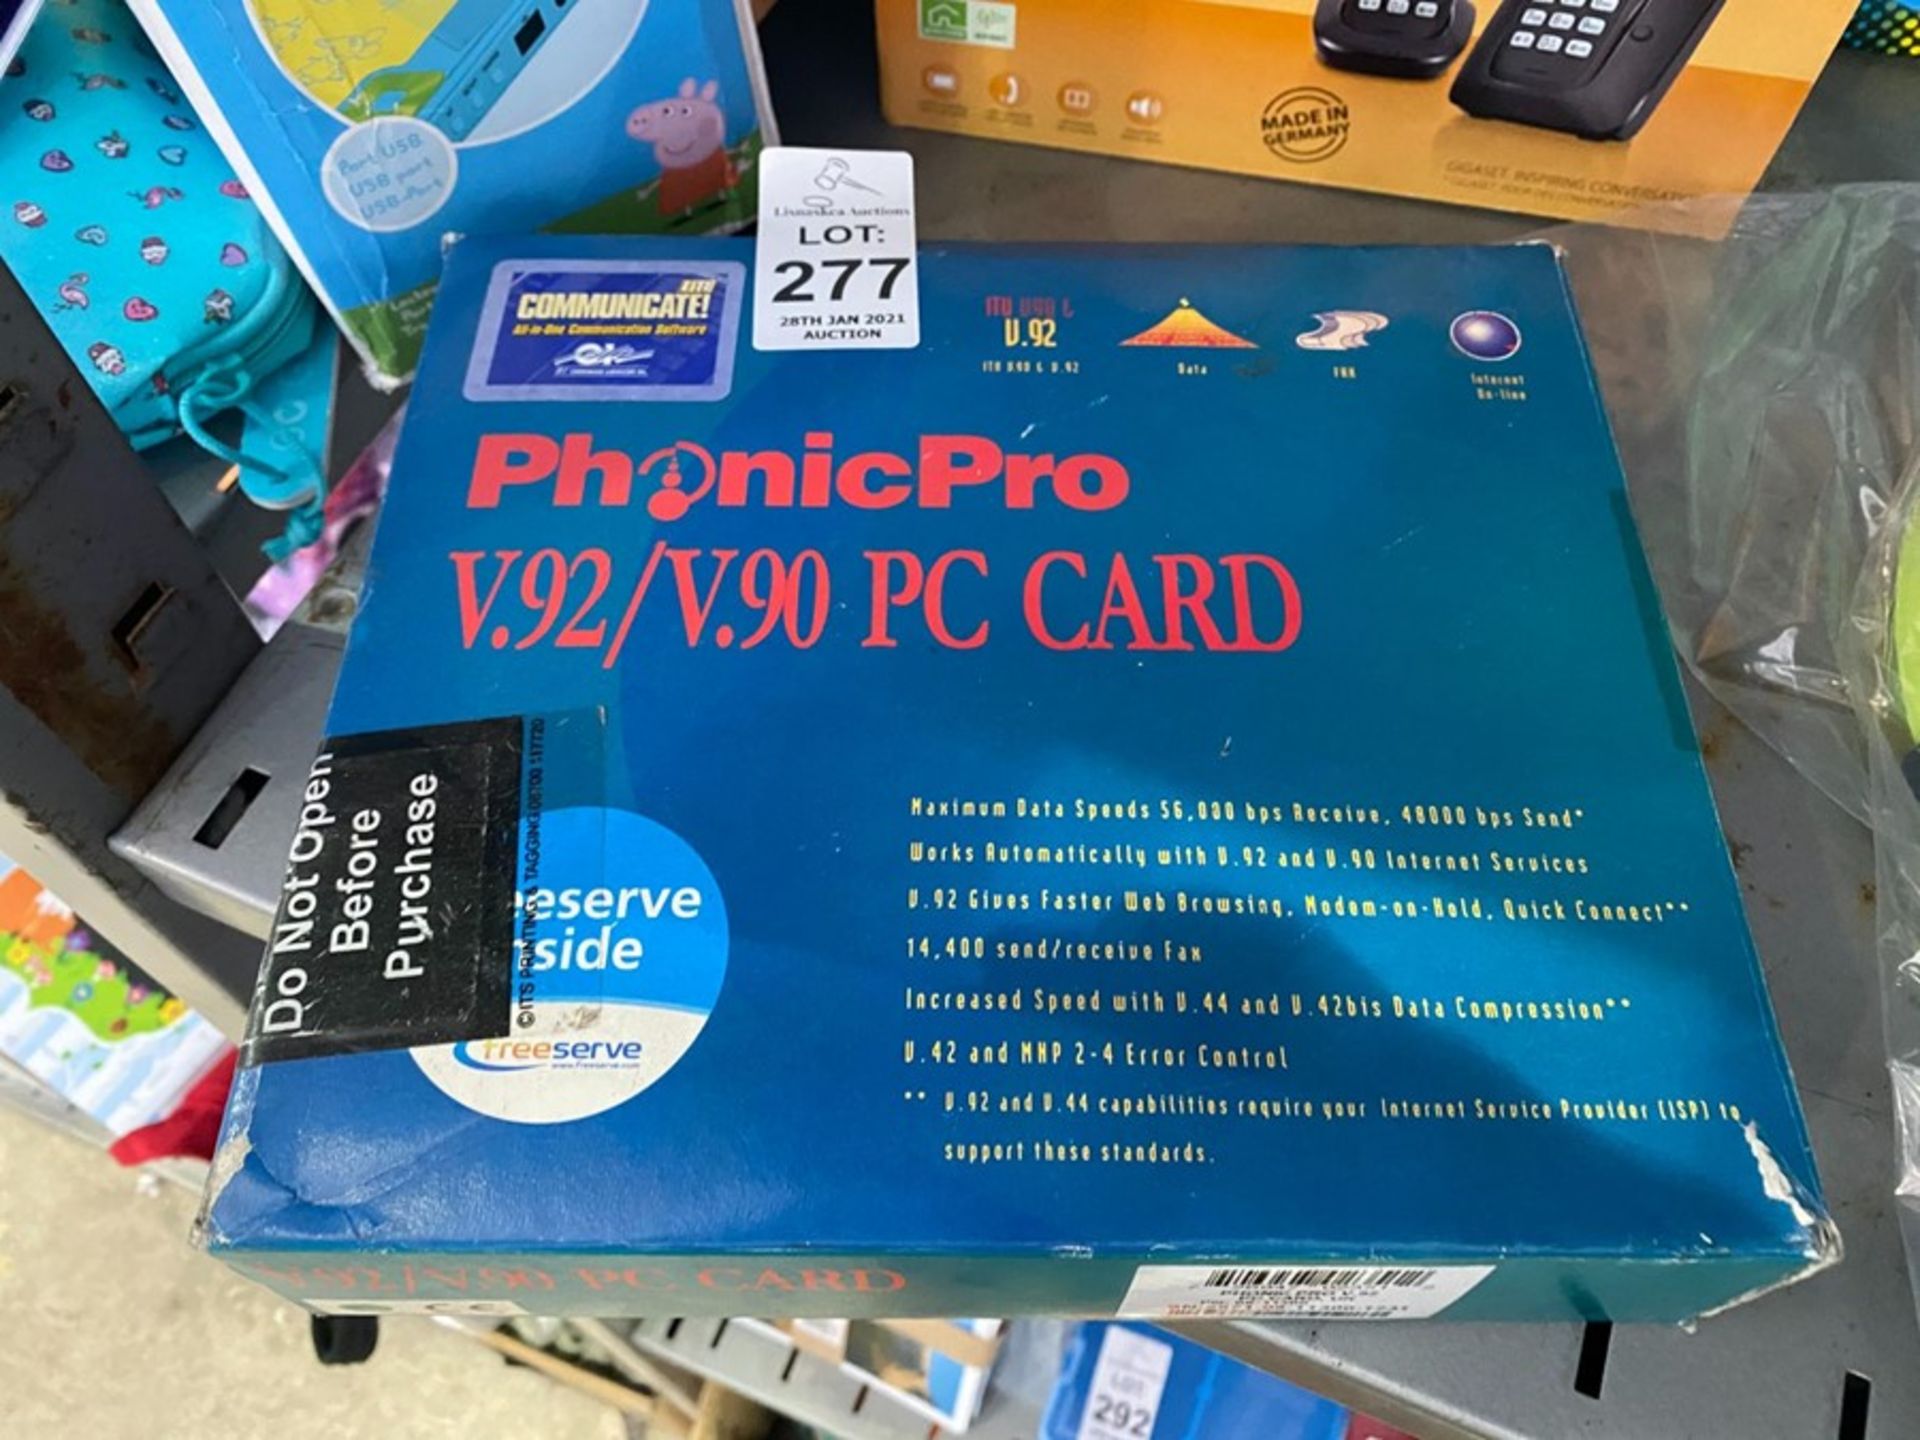 PHONIC PRO V.92/V.90 PC CARD